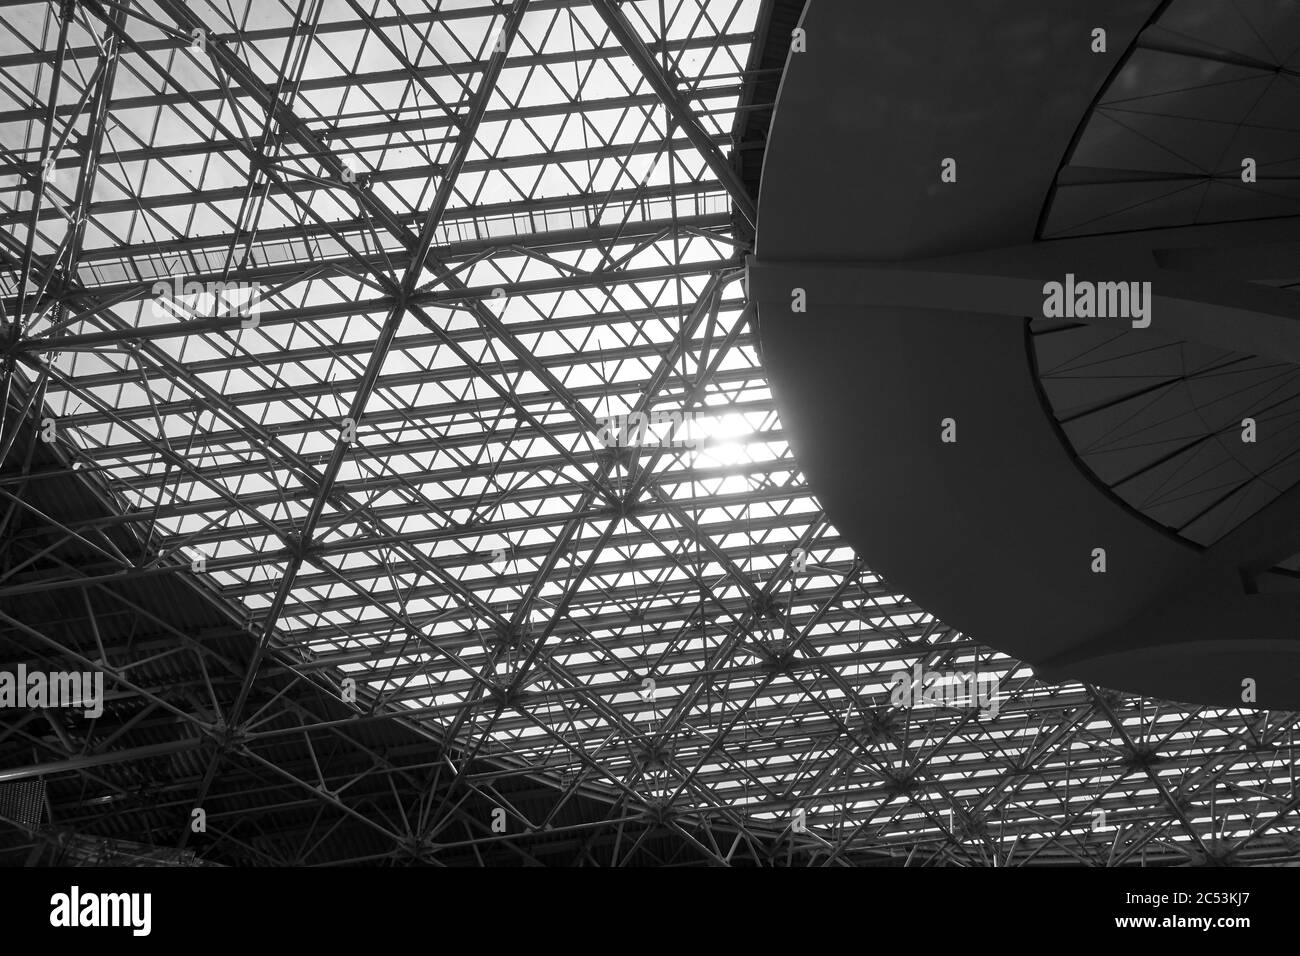 Ventana de claraboya - enorme construcción industrial con techo de cristal. Fotografía arquitectónica en blanco y negro Foto de stock